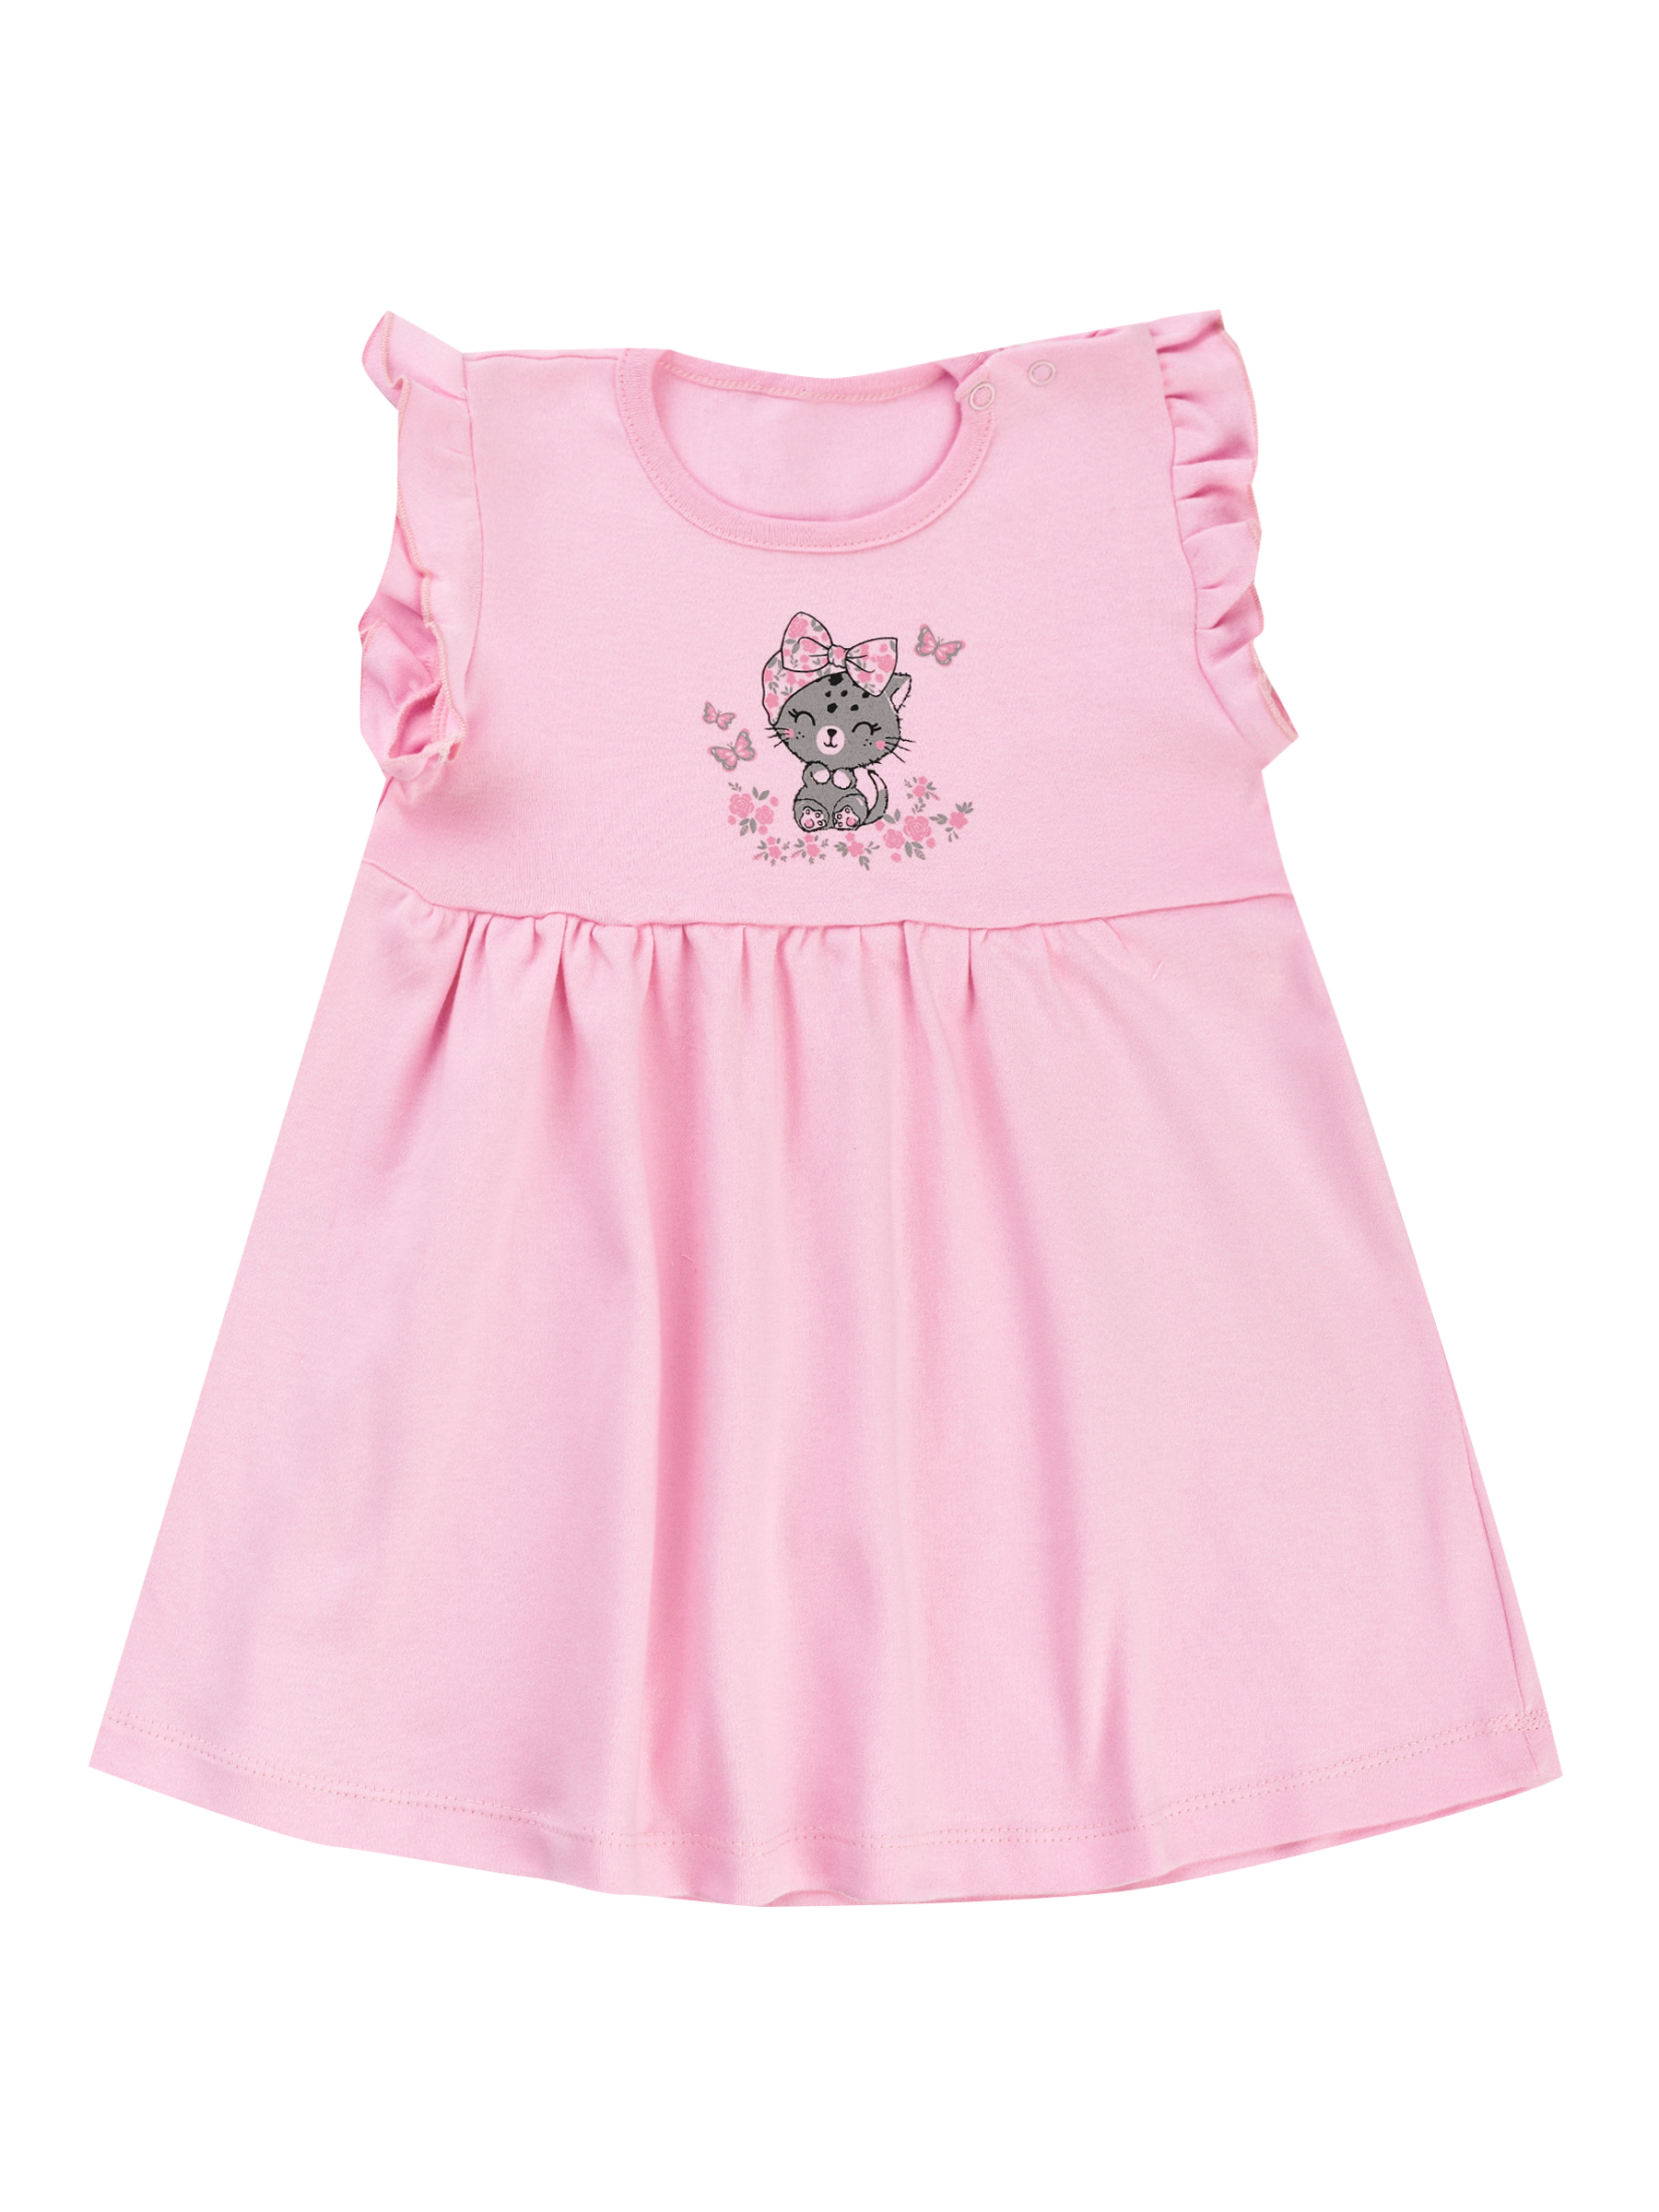 Платье детское Гам МD 1005 цв. розовый р. 86